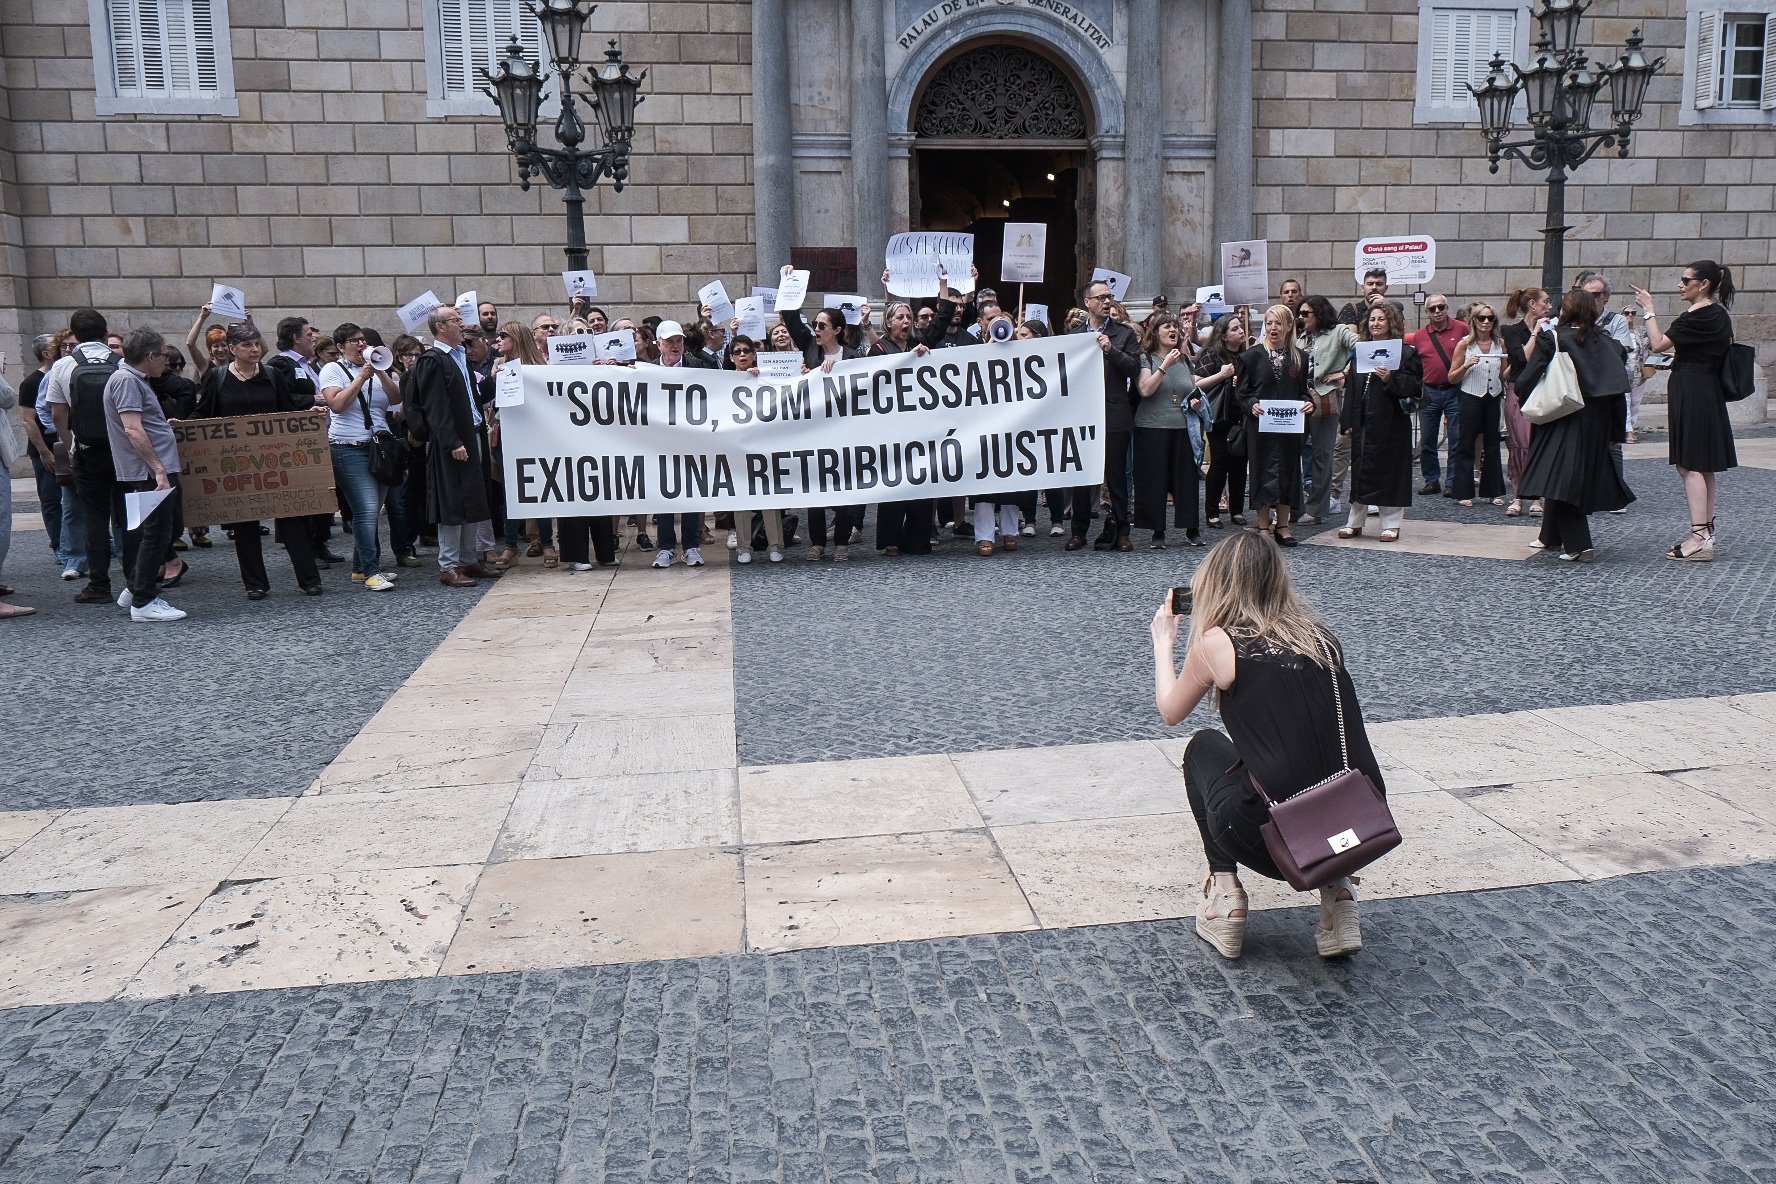 Advocats del torn de justícia gratuïta es manifesten a Barcelona per exigir remuneracions "dignes"